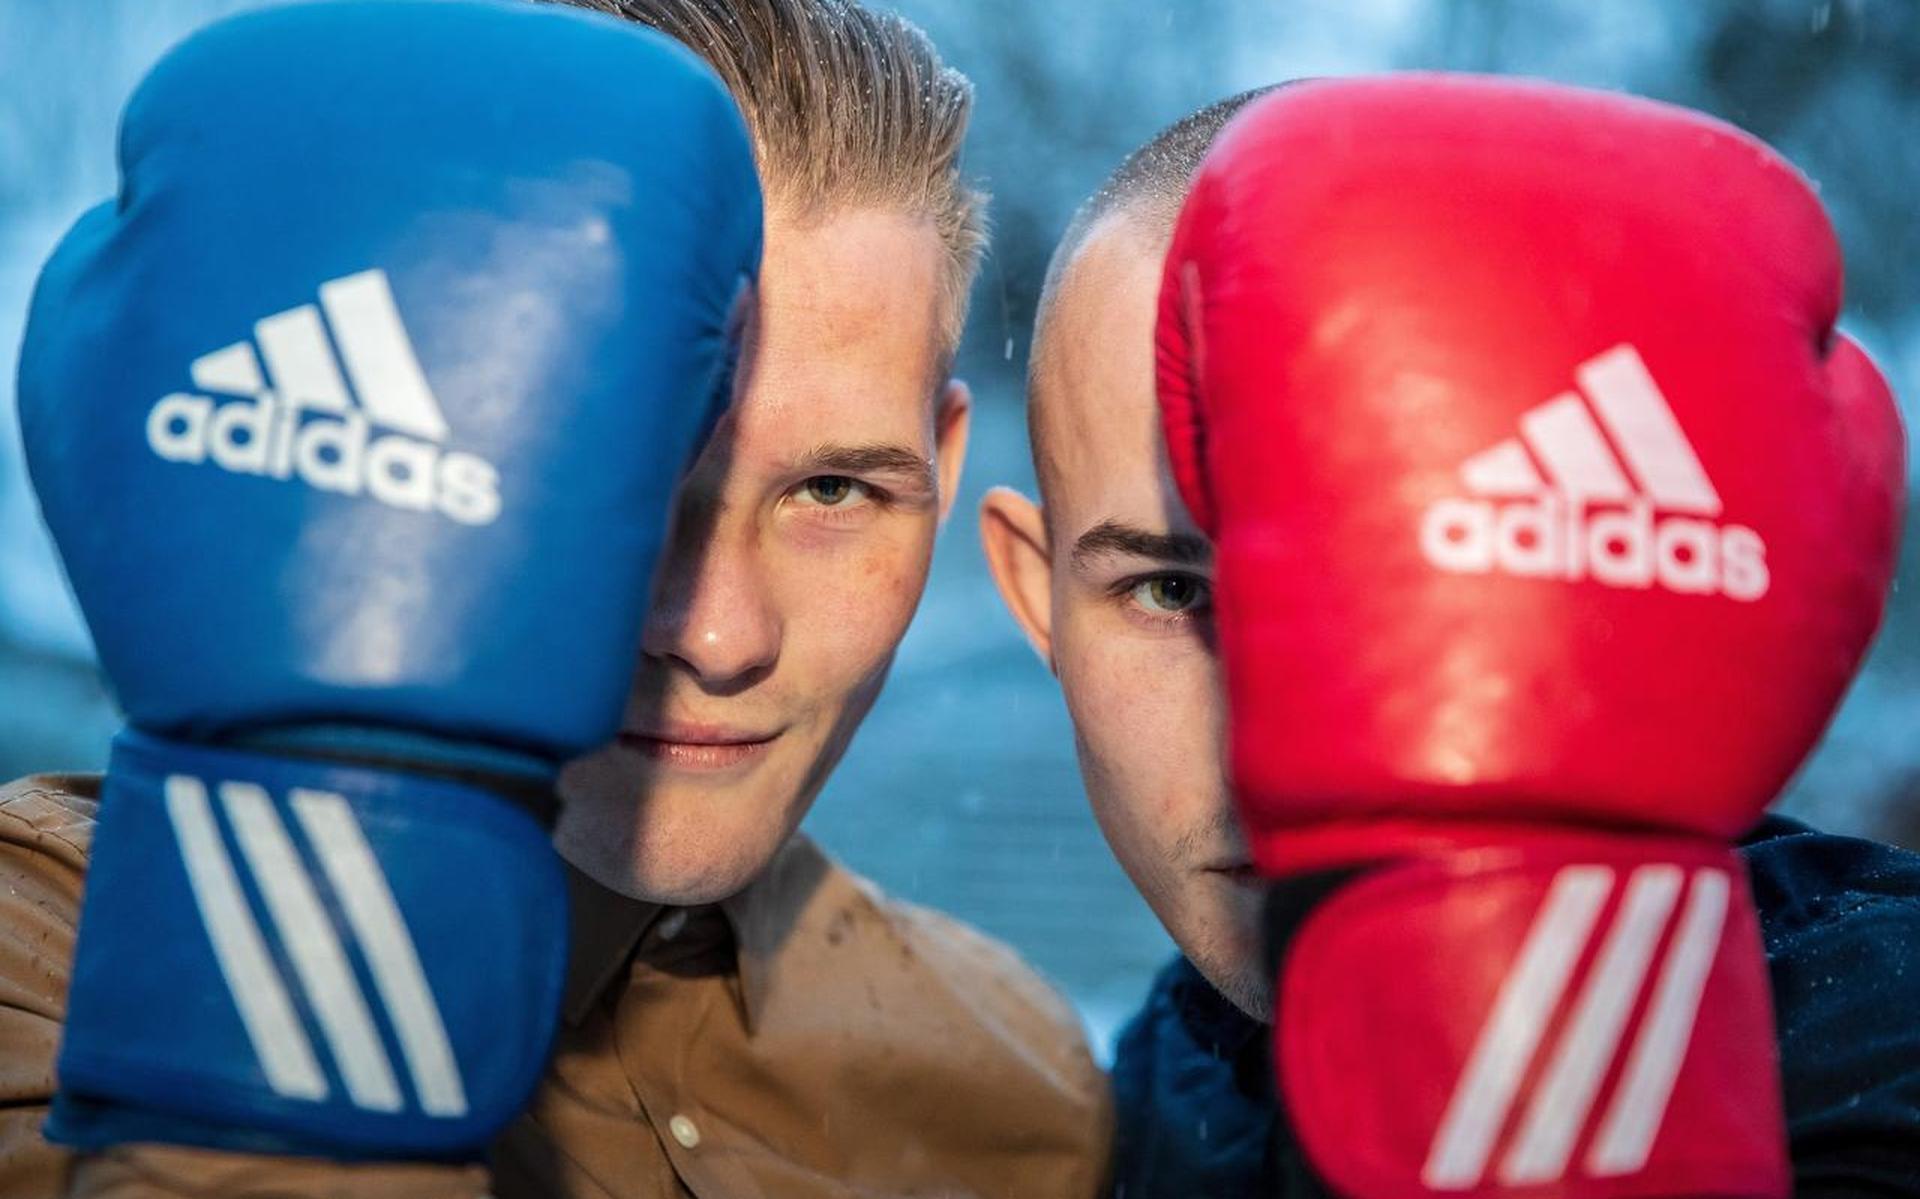 De broers Ferenc Haye Soepboer uit Sneek dromen van bokstitels - Friesch Dagblad